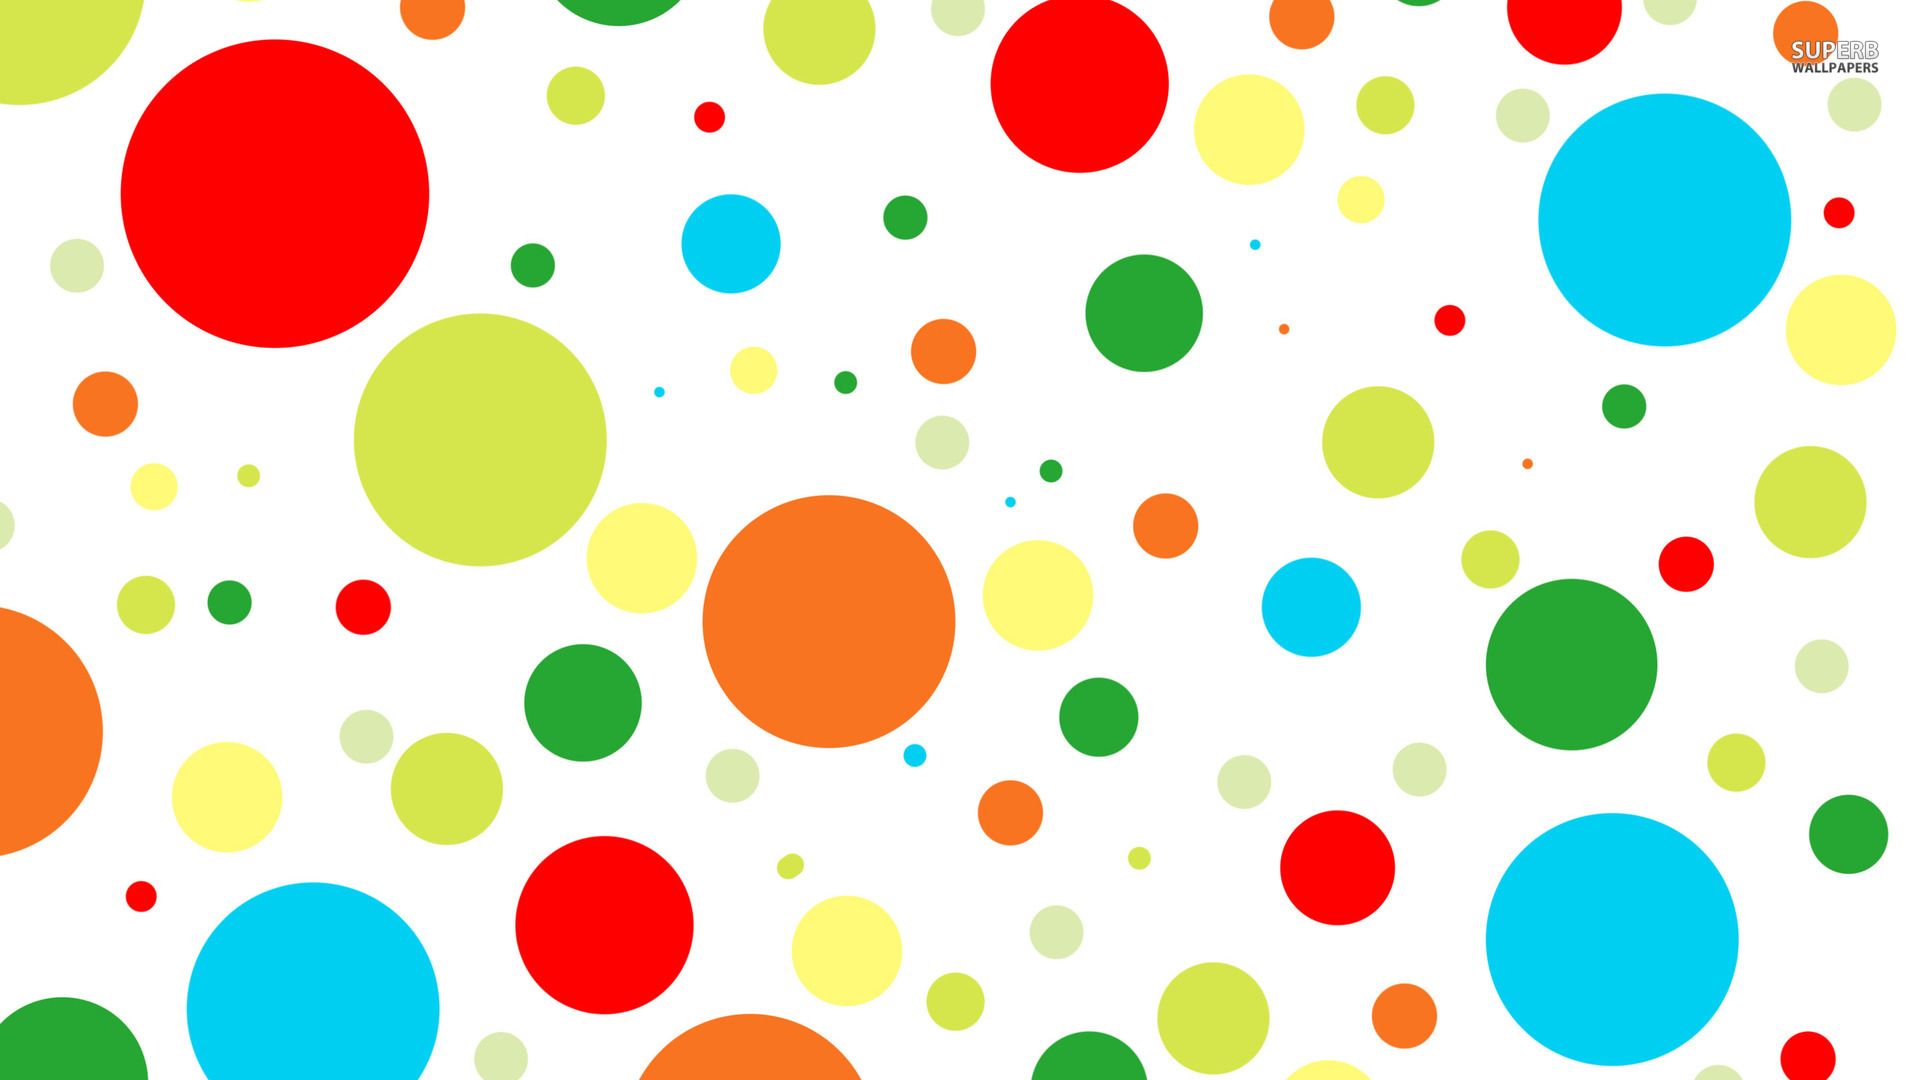 Fondos de pantalla de círculos de colores - FondosMil